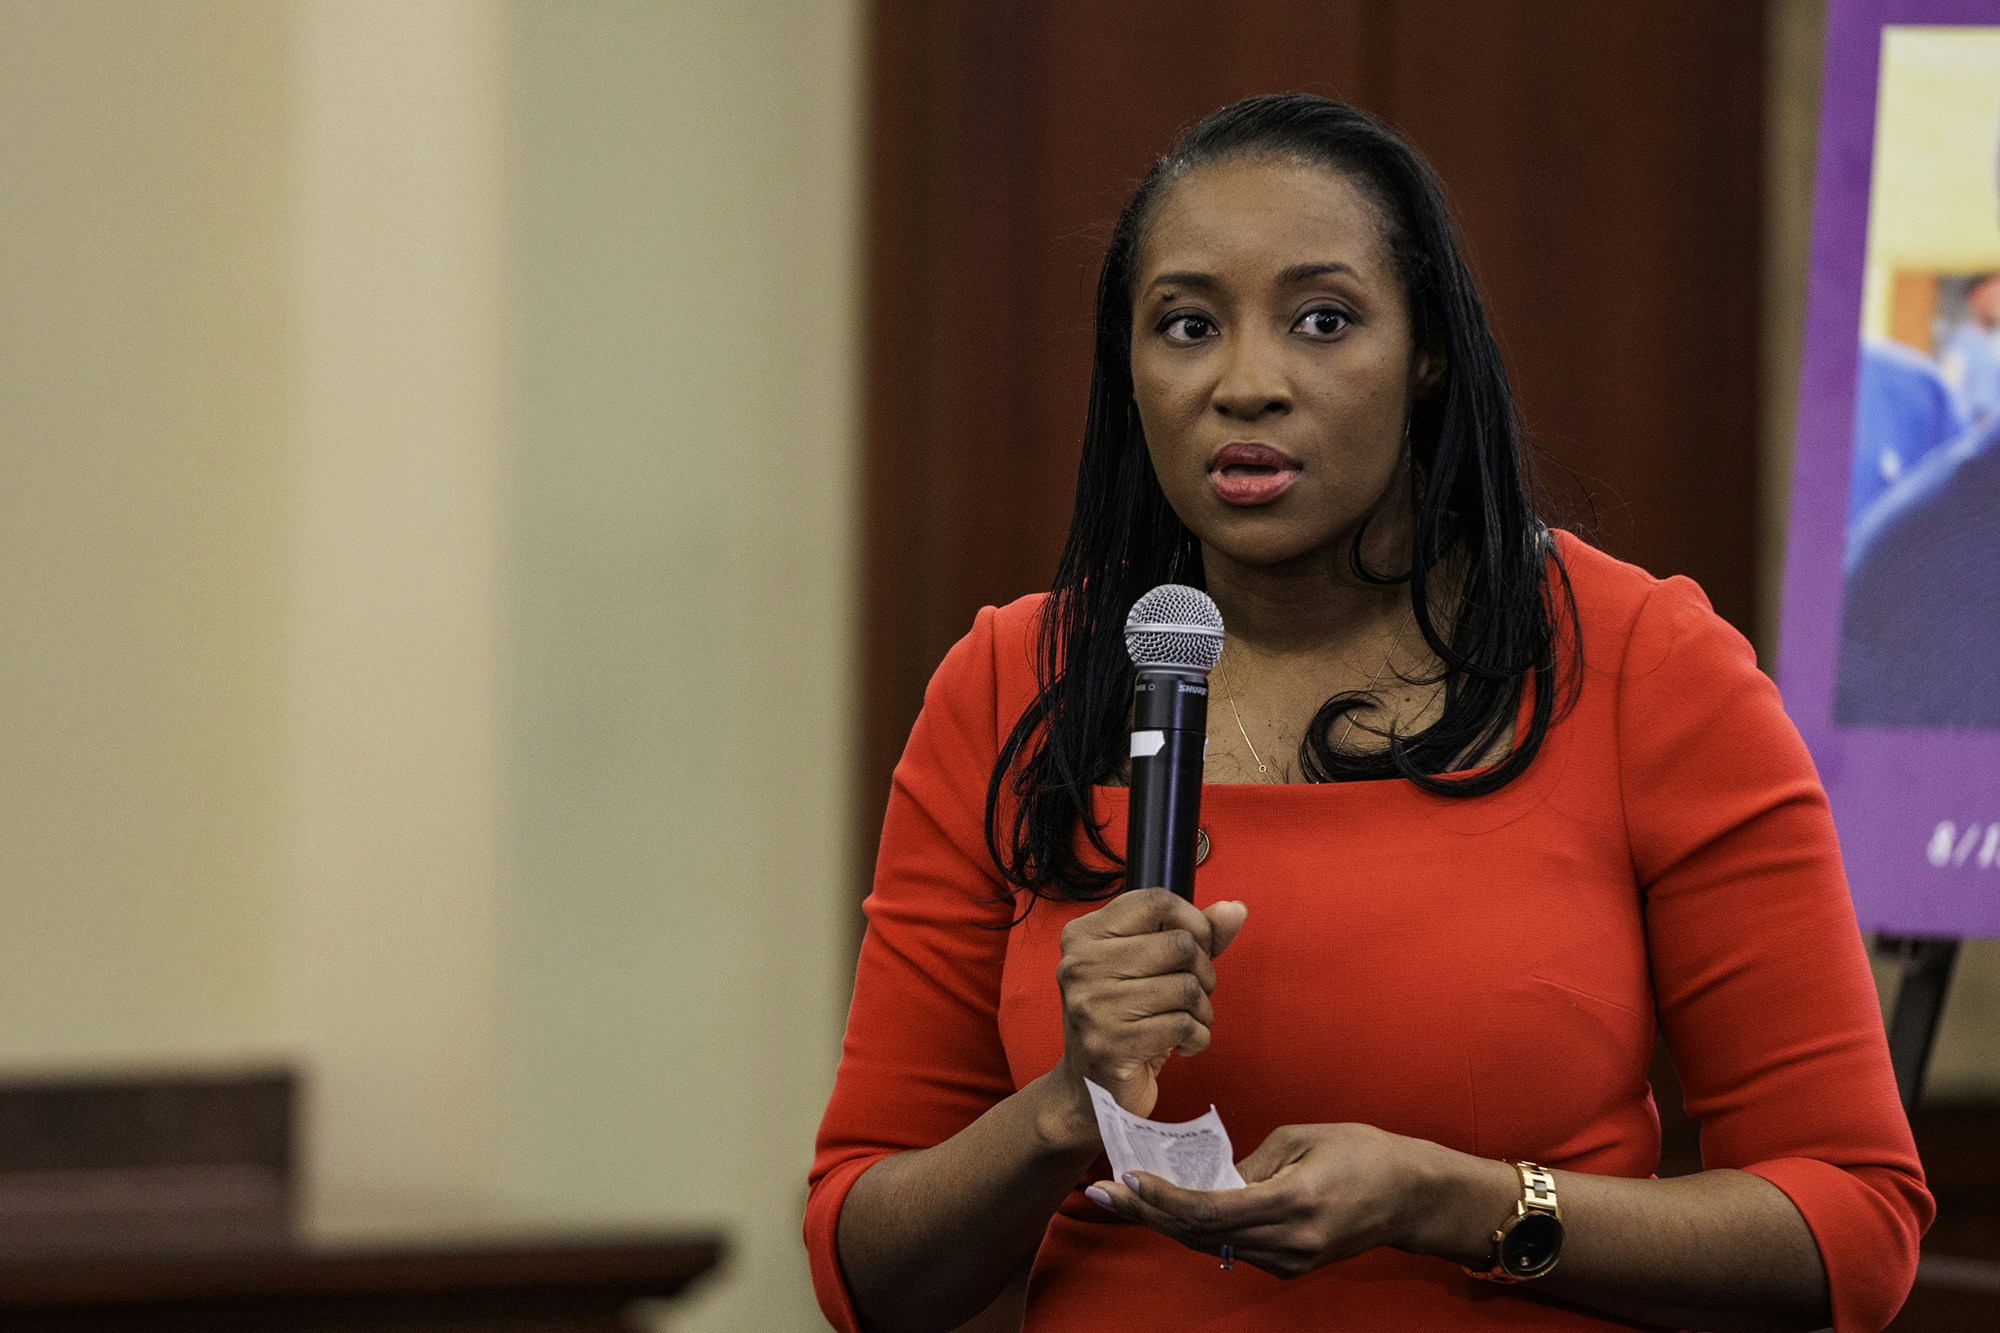 Patrice Onwuka, diretora do Centro de Oportunidades Econômicas do Fórum de Mulheres Independentes, fala durante um evento organizado pelos Republicanos do Congresso em 1º de março de 2022, em Washington, D.C.